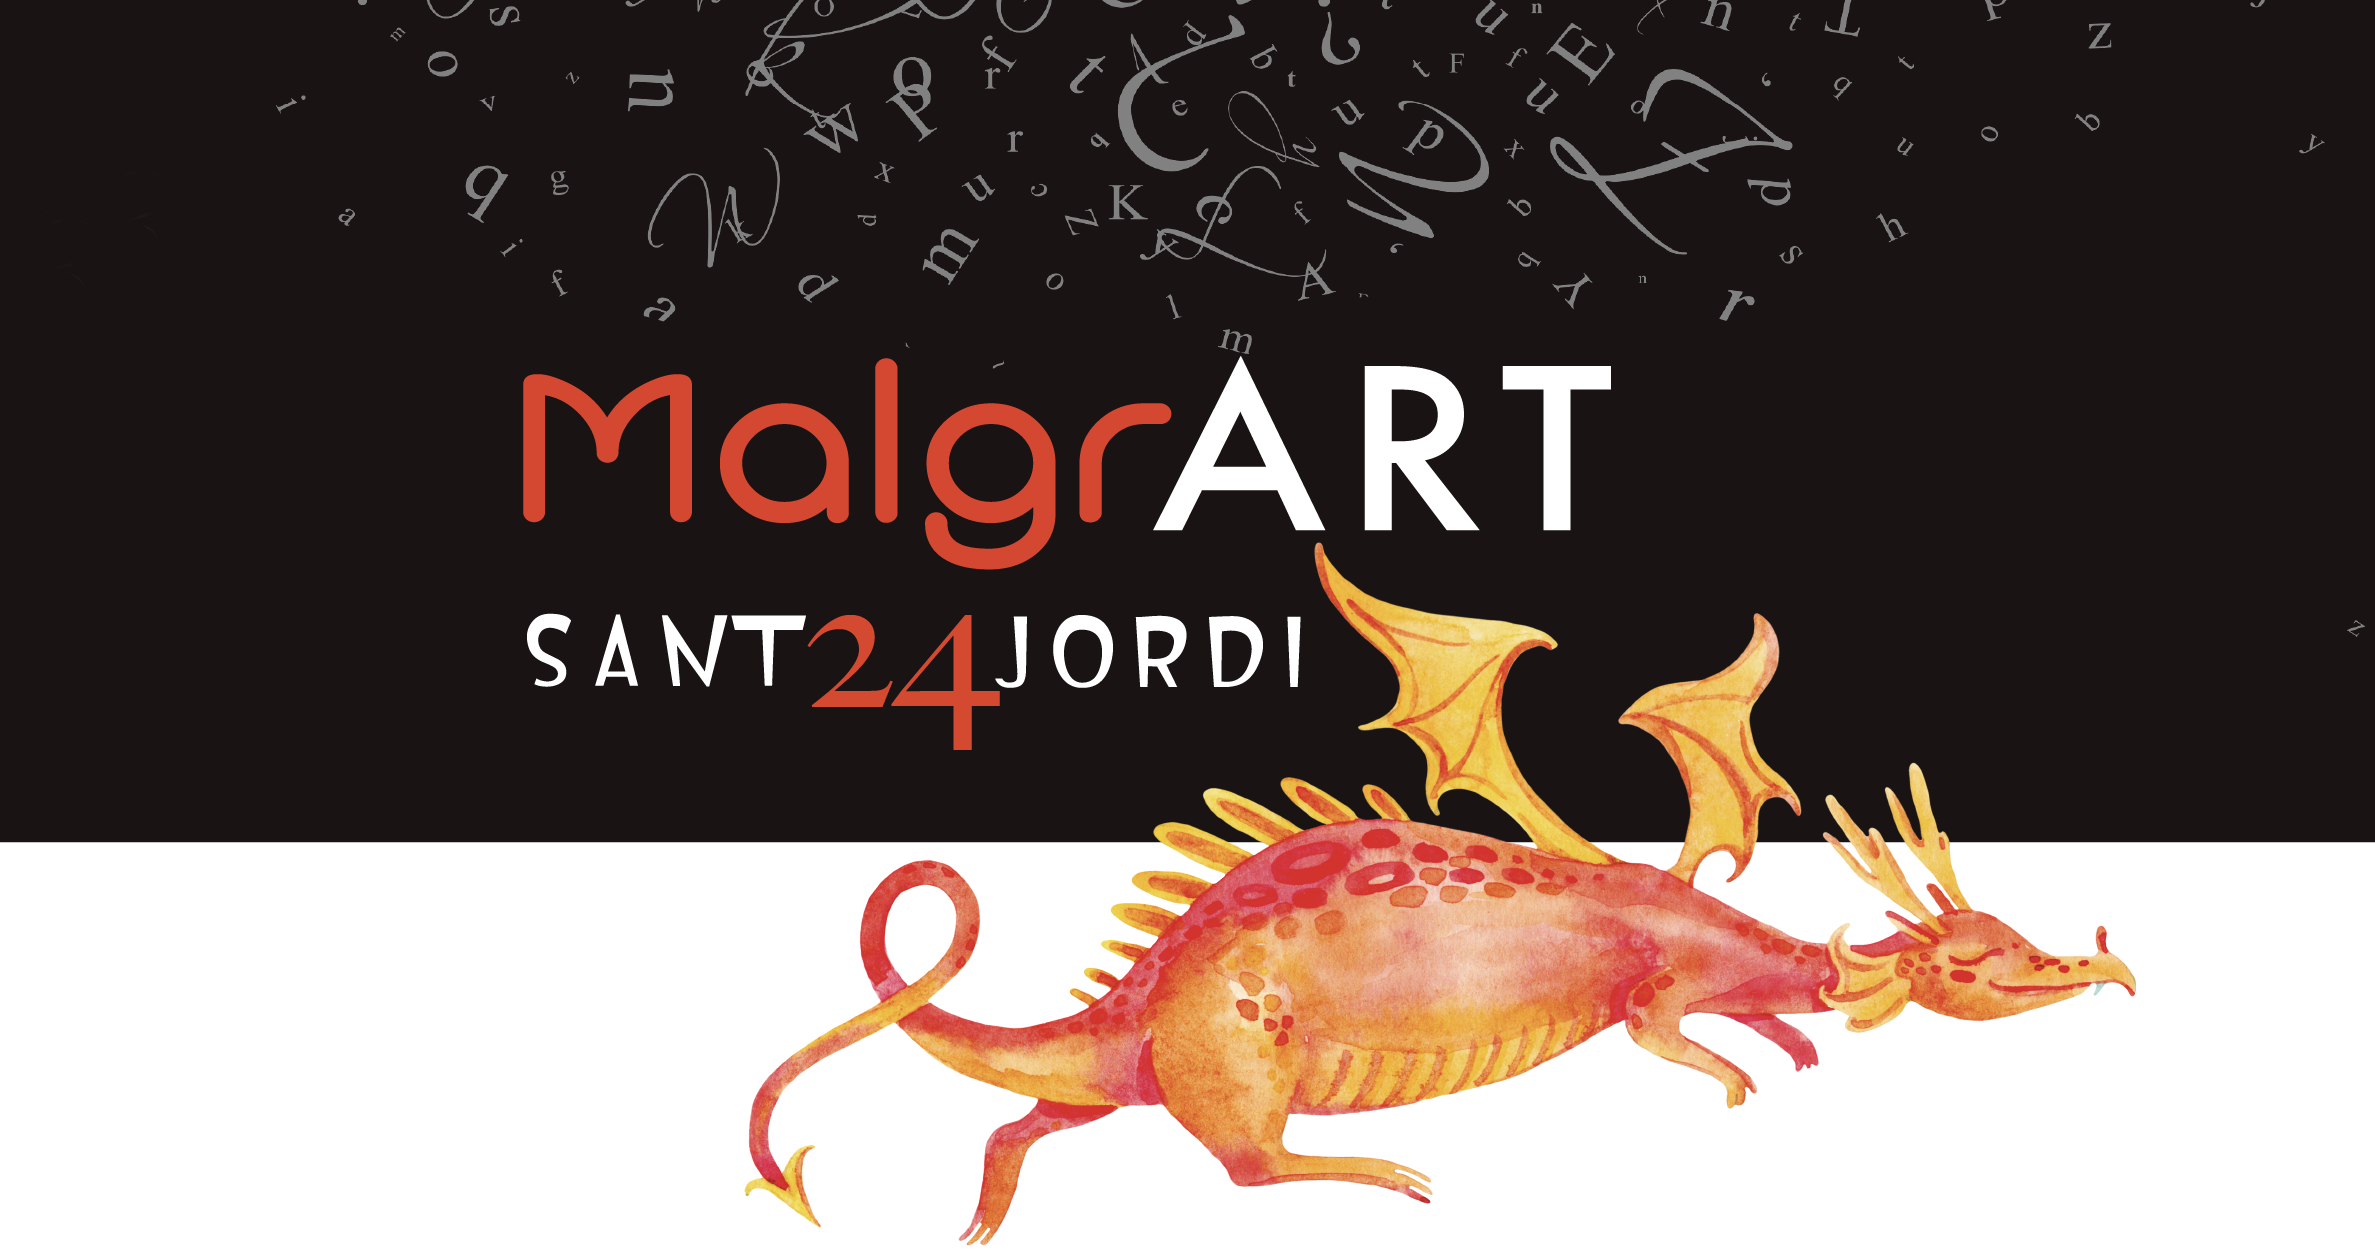 La programació de Sant Jordi, MalgrART, aixecarà el teló el 22 d'abril amb 27 propostes 